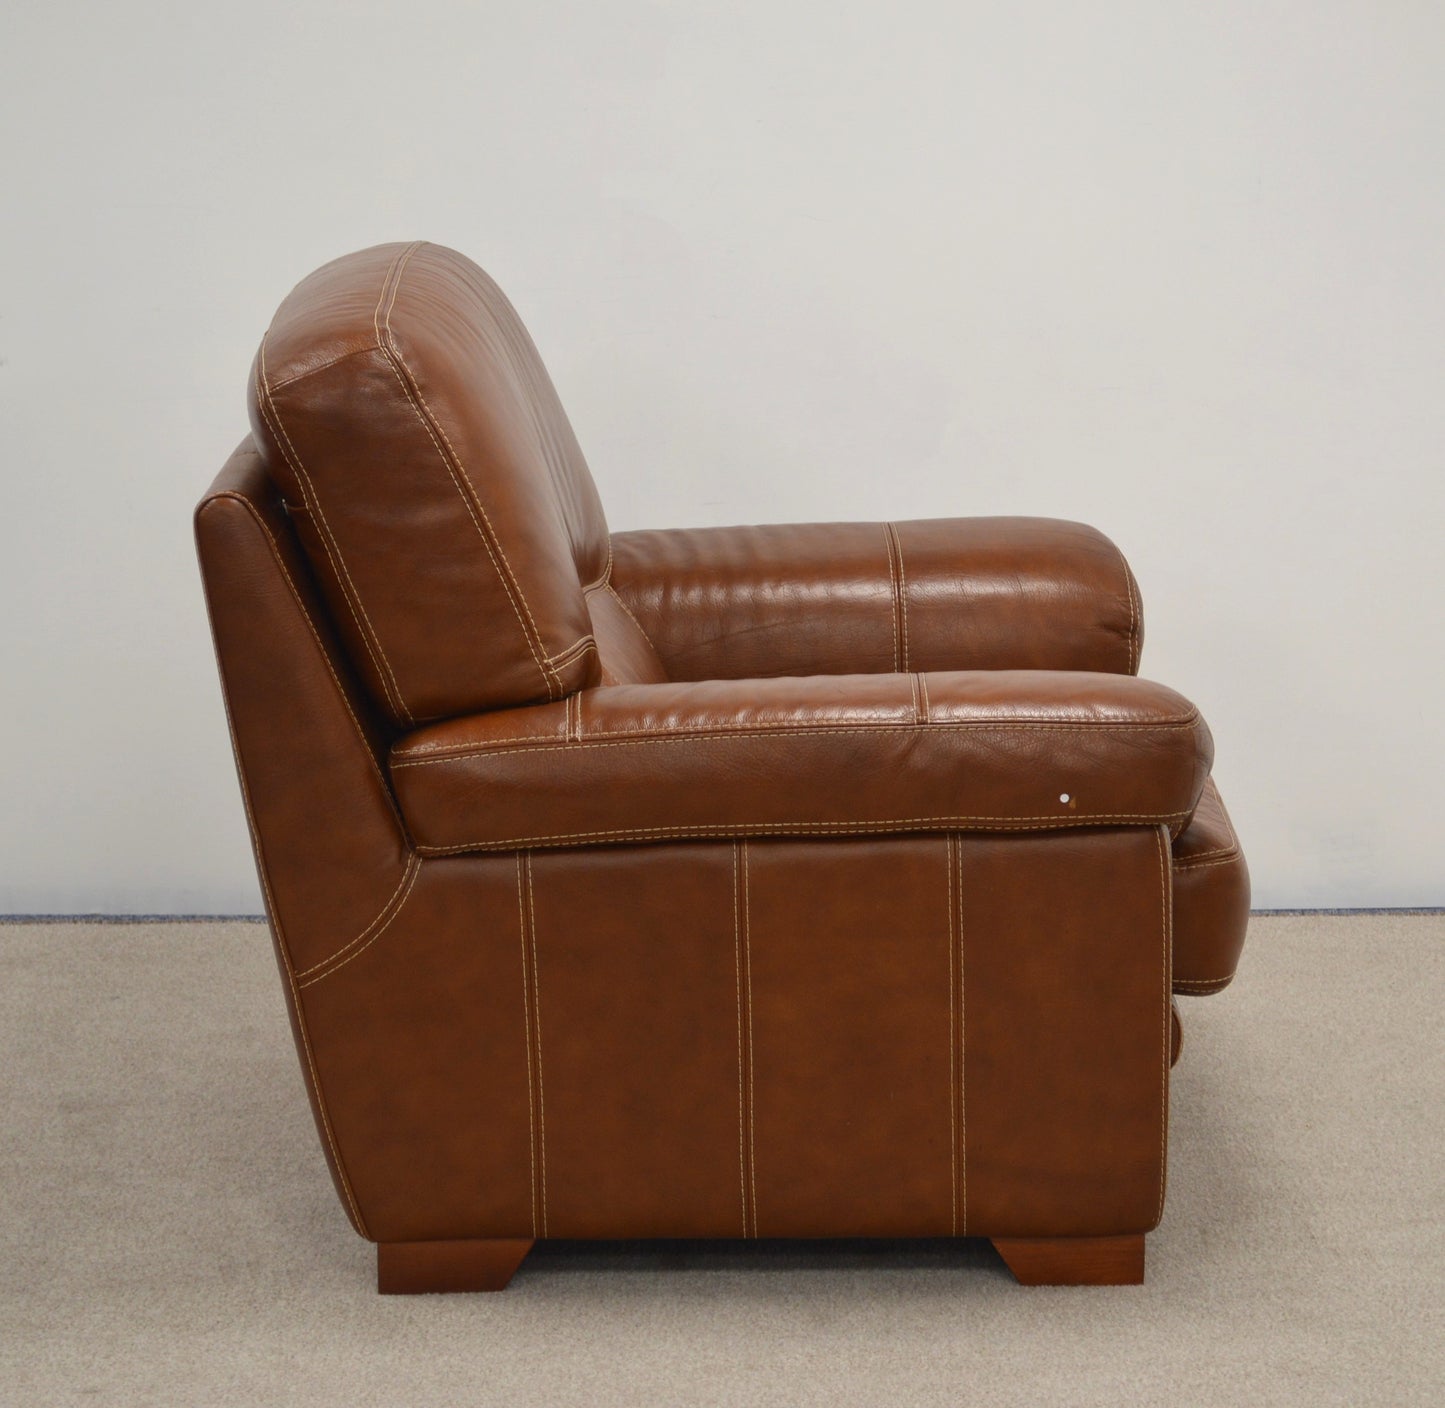 Leather Sofa Set